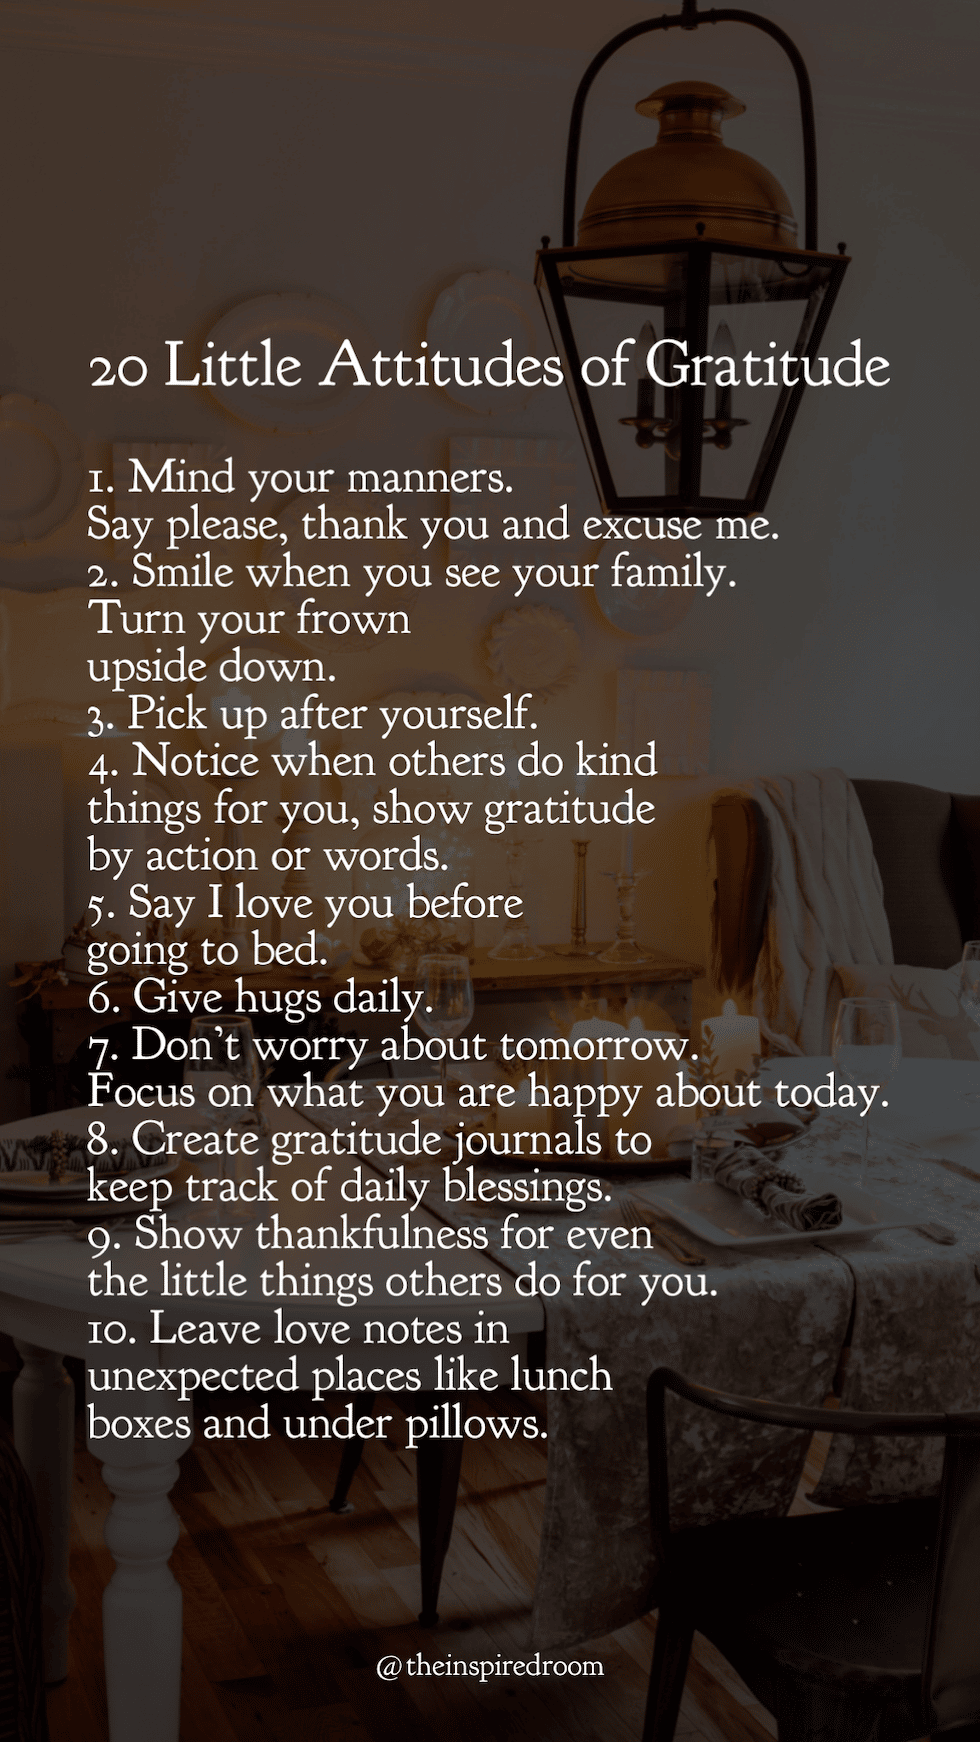 Liste des 20 petites attitudes de gratitude